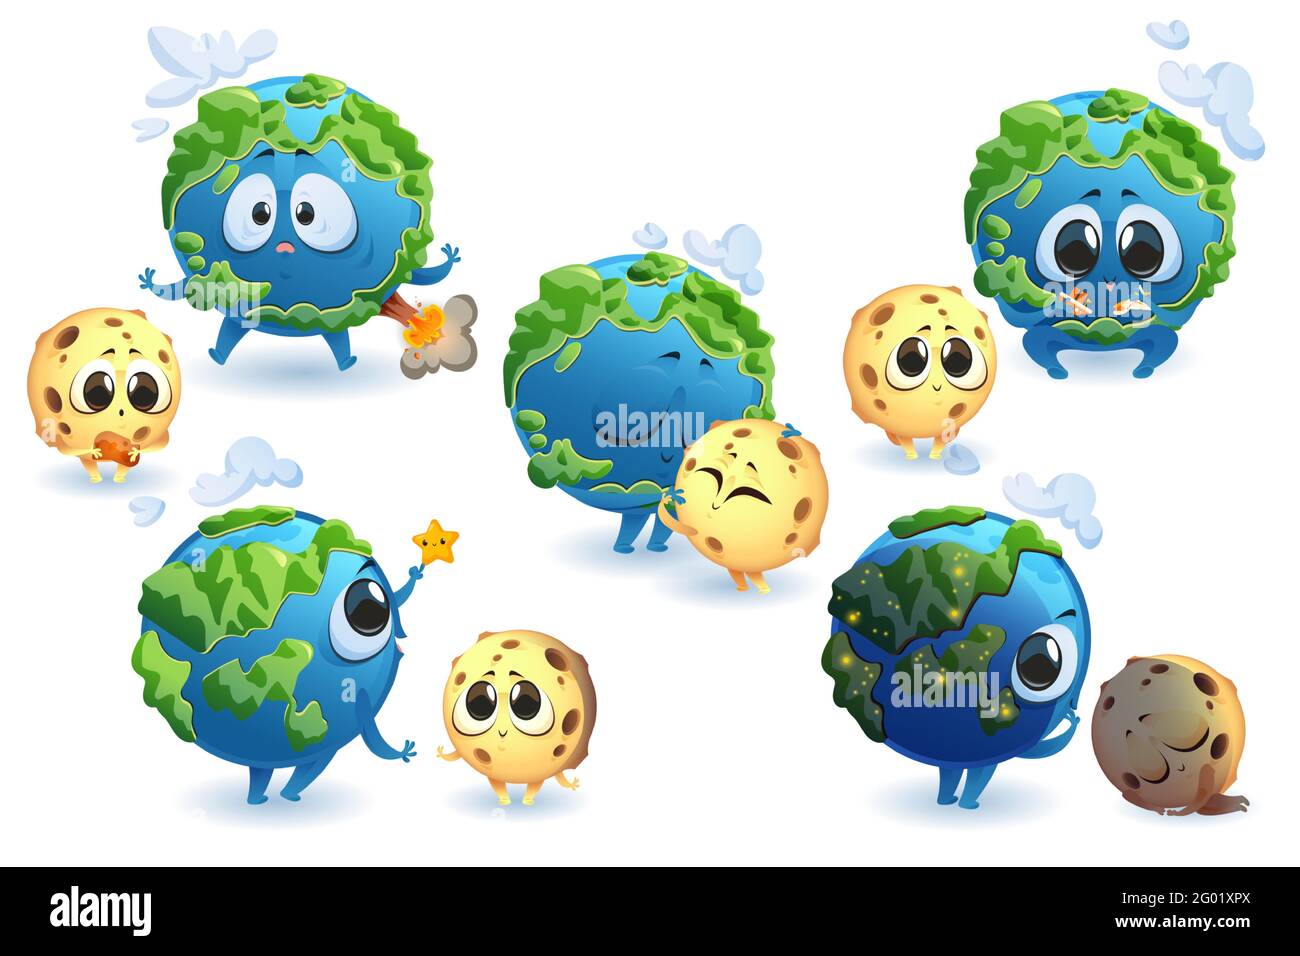 Niedliche Planeten Erde und Mond Zeichen in verschiedenen Posen isoliert auf weißem Hintergrund. Vektor-Set von Cartoon lustigen Planeten und Satelliten Lächeln, Umarmung, Schlaf und spielen. Erde mit Vulkan und Wolken Stock Vektor